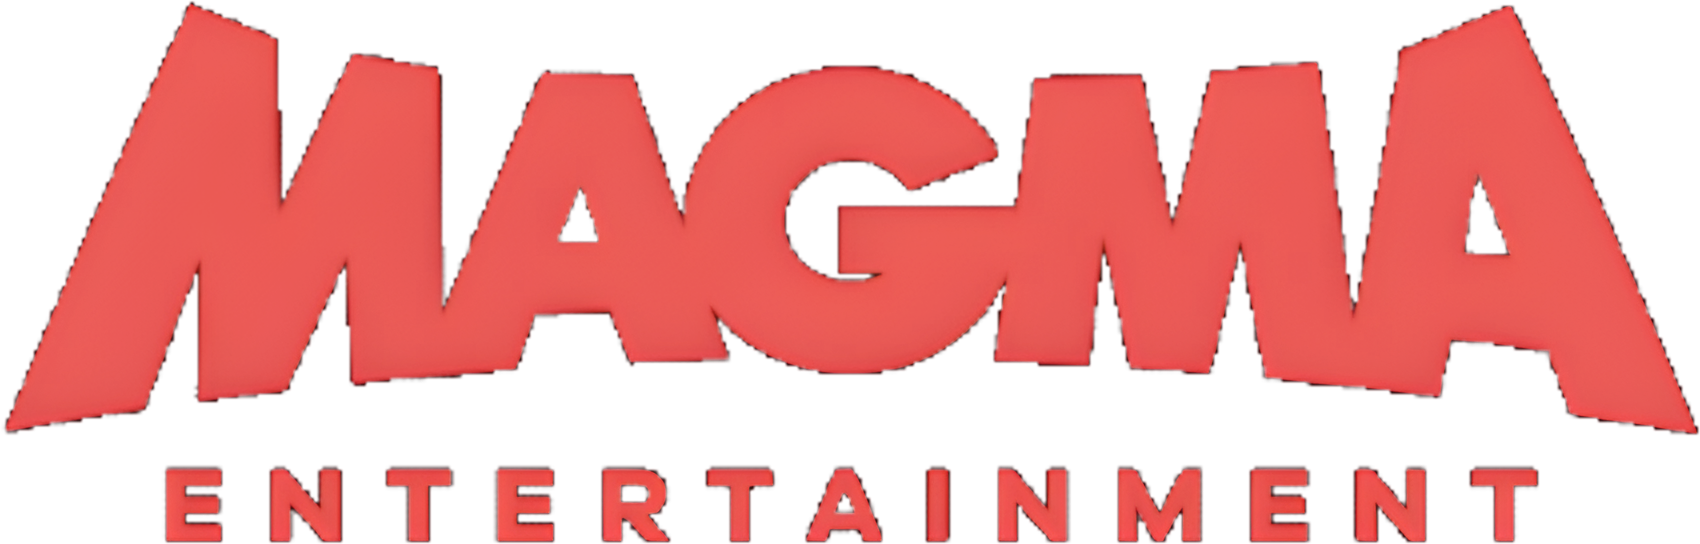 Magma Entertainment